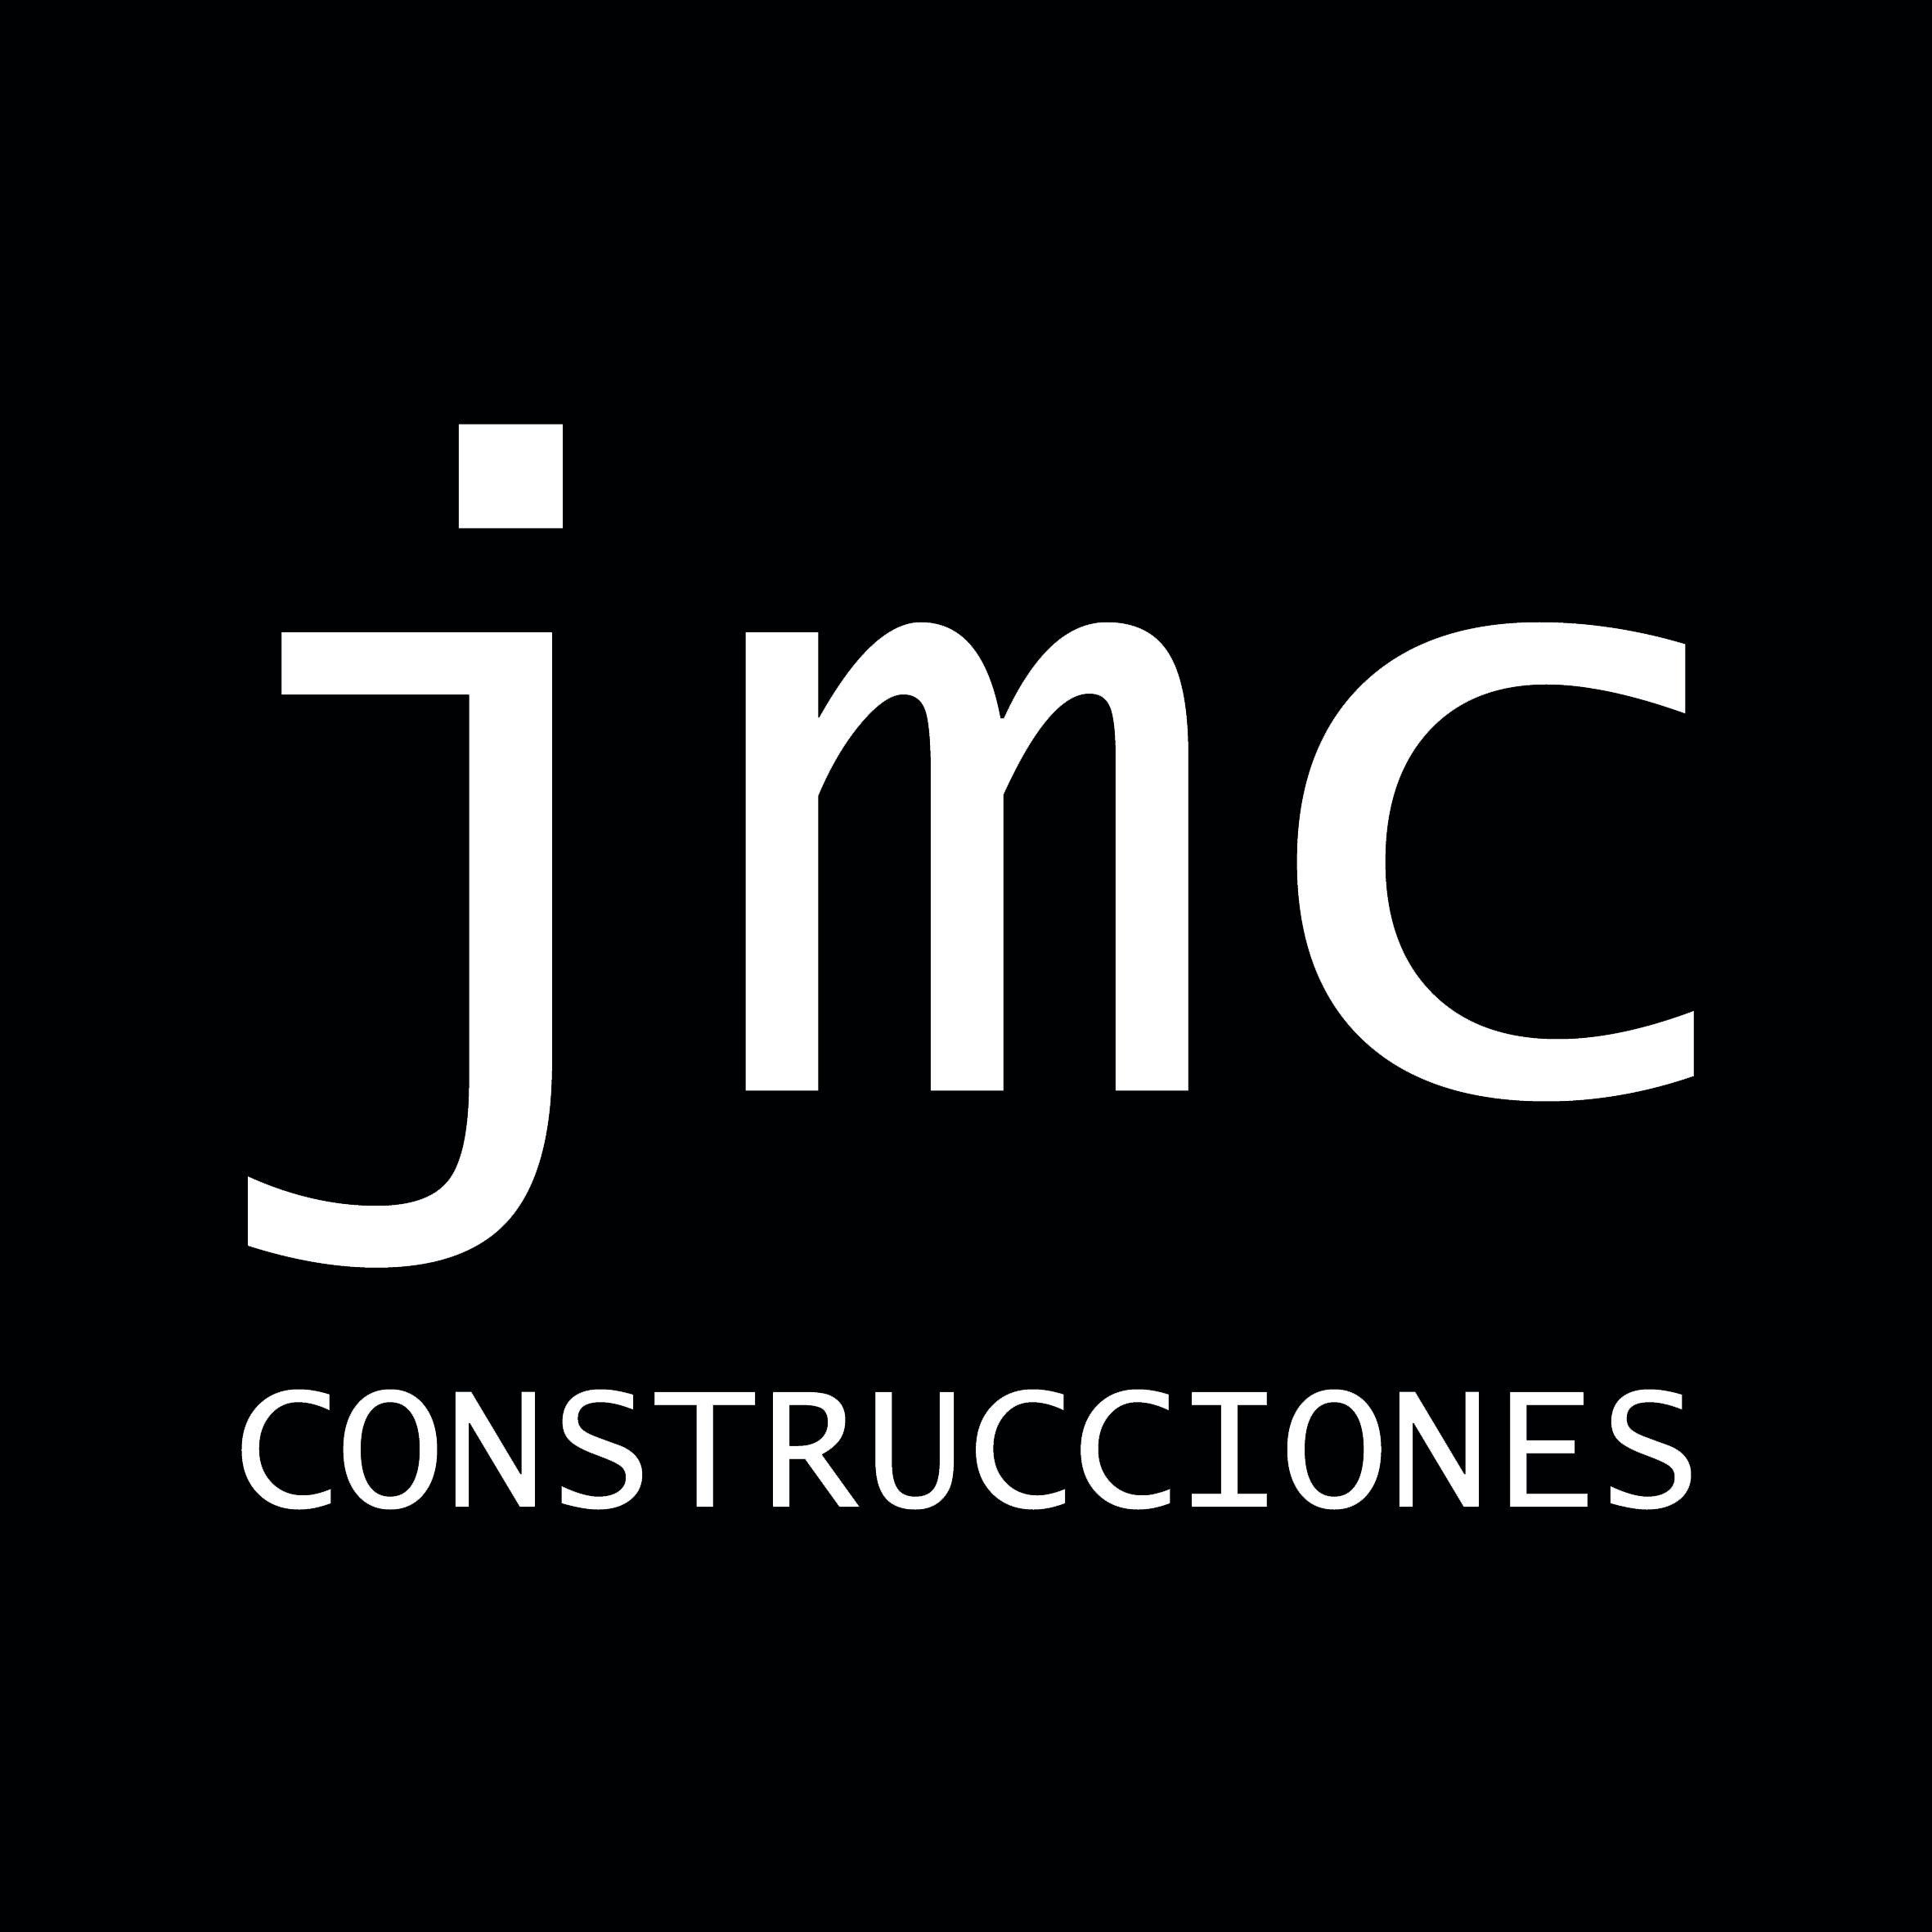 Pintura de Edificios. Interior y Exterior. +54 9 11-5011-3760 / Consorcios. Ley 257 jmc.construcciones@yahoo.com.ar. Estamos en CABA - BsAs Argentina